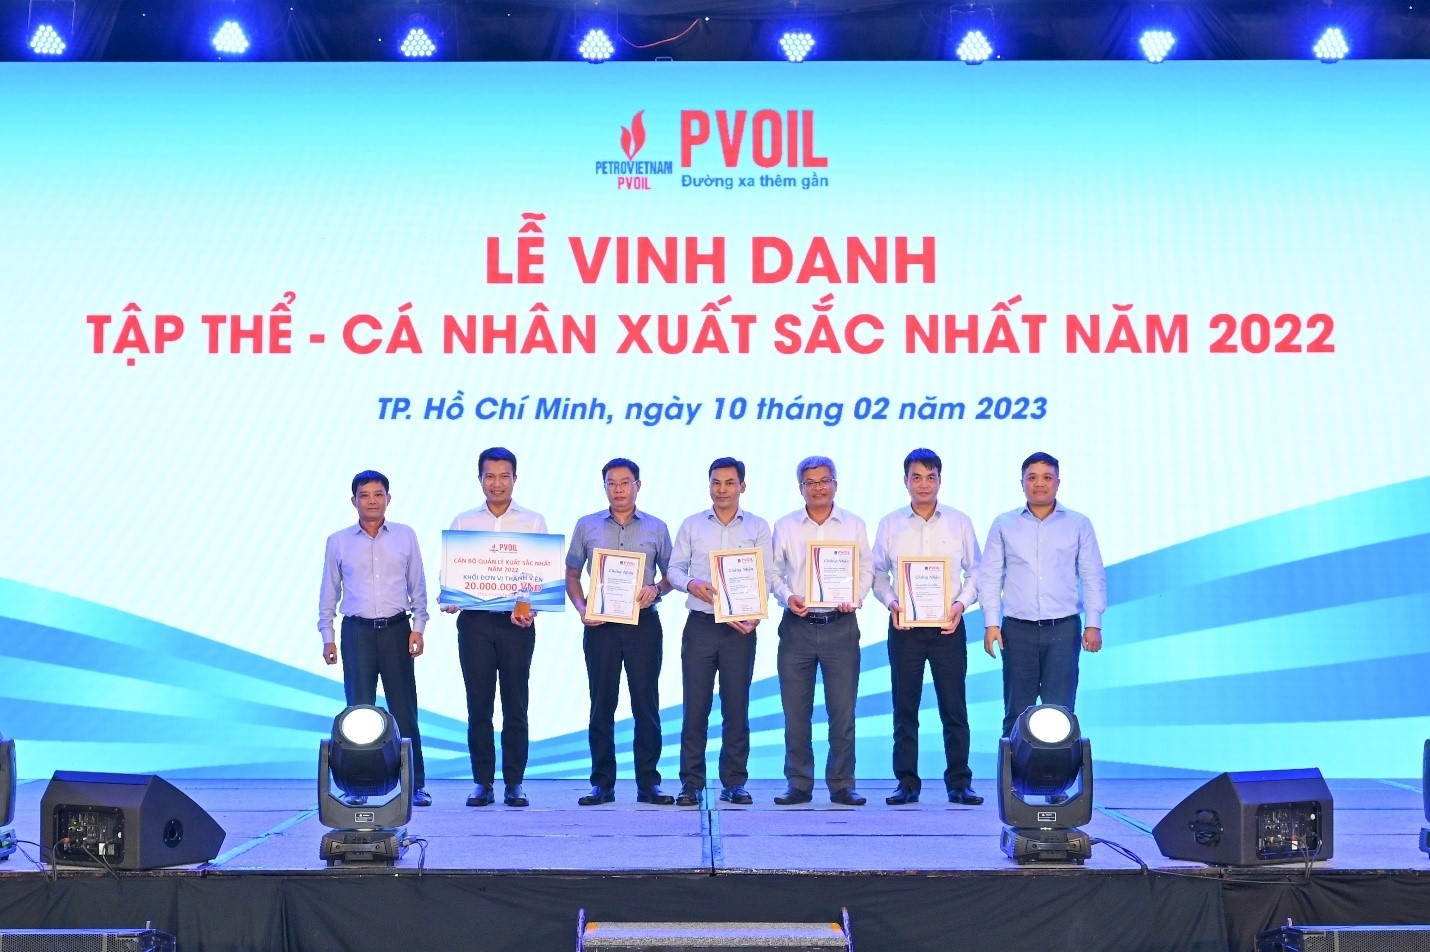 Lãnh đạo PVOIL trao danh hiệu “Cán bộ quản lý xuất sắc nhất năm 2022” (khối Đơn vị thành viên)